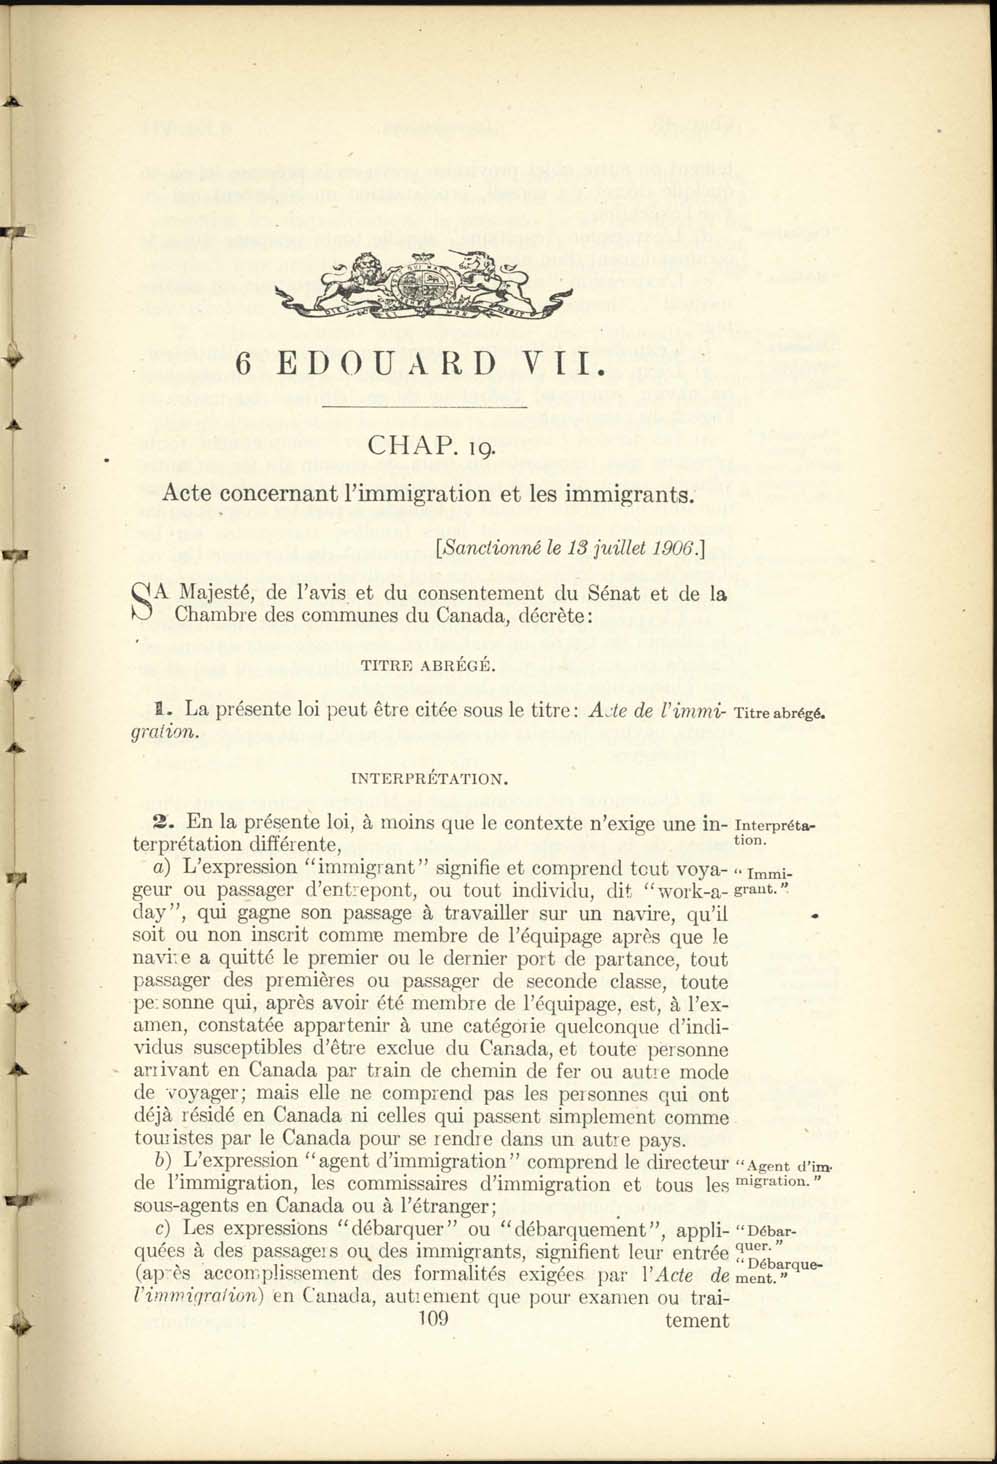 Chap. 19 Page 109 Acte de l’immigration, 1906